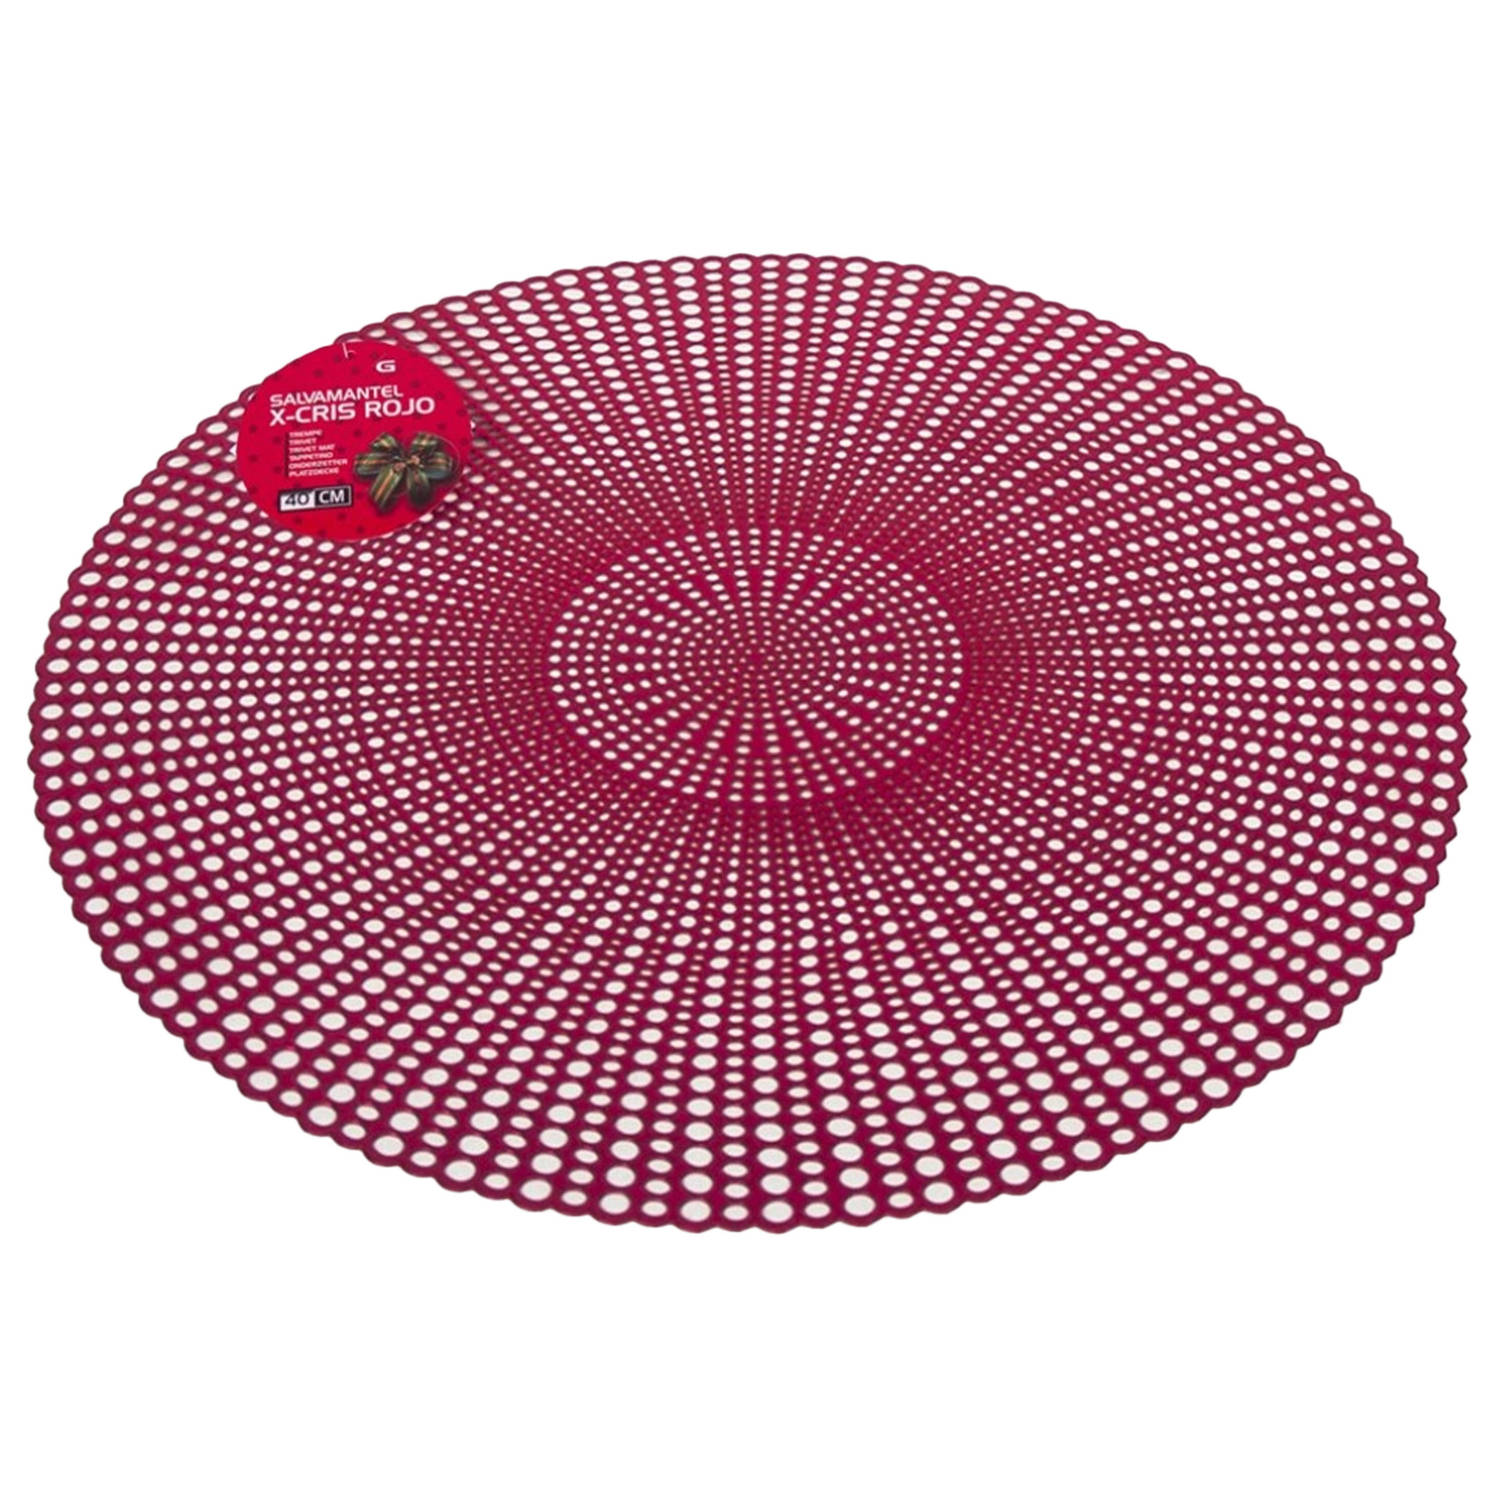 Ronde diner tafel placemats rood-kleur met diameter 40 cm - Kunststof - Voor o.a. Kerstmis/bruiloft/dagelijks